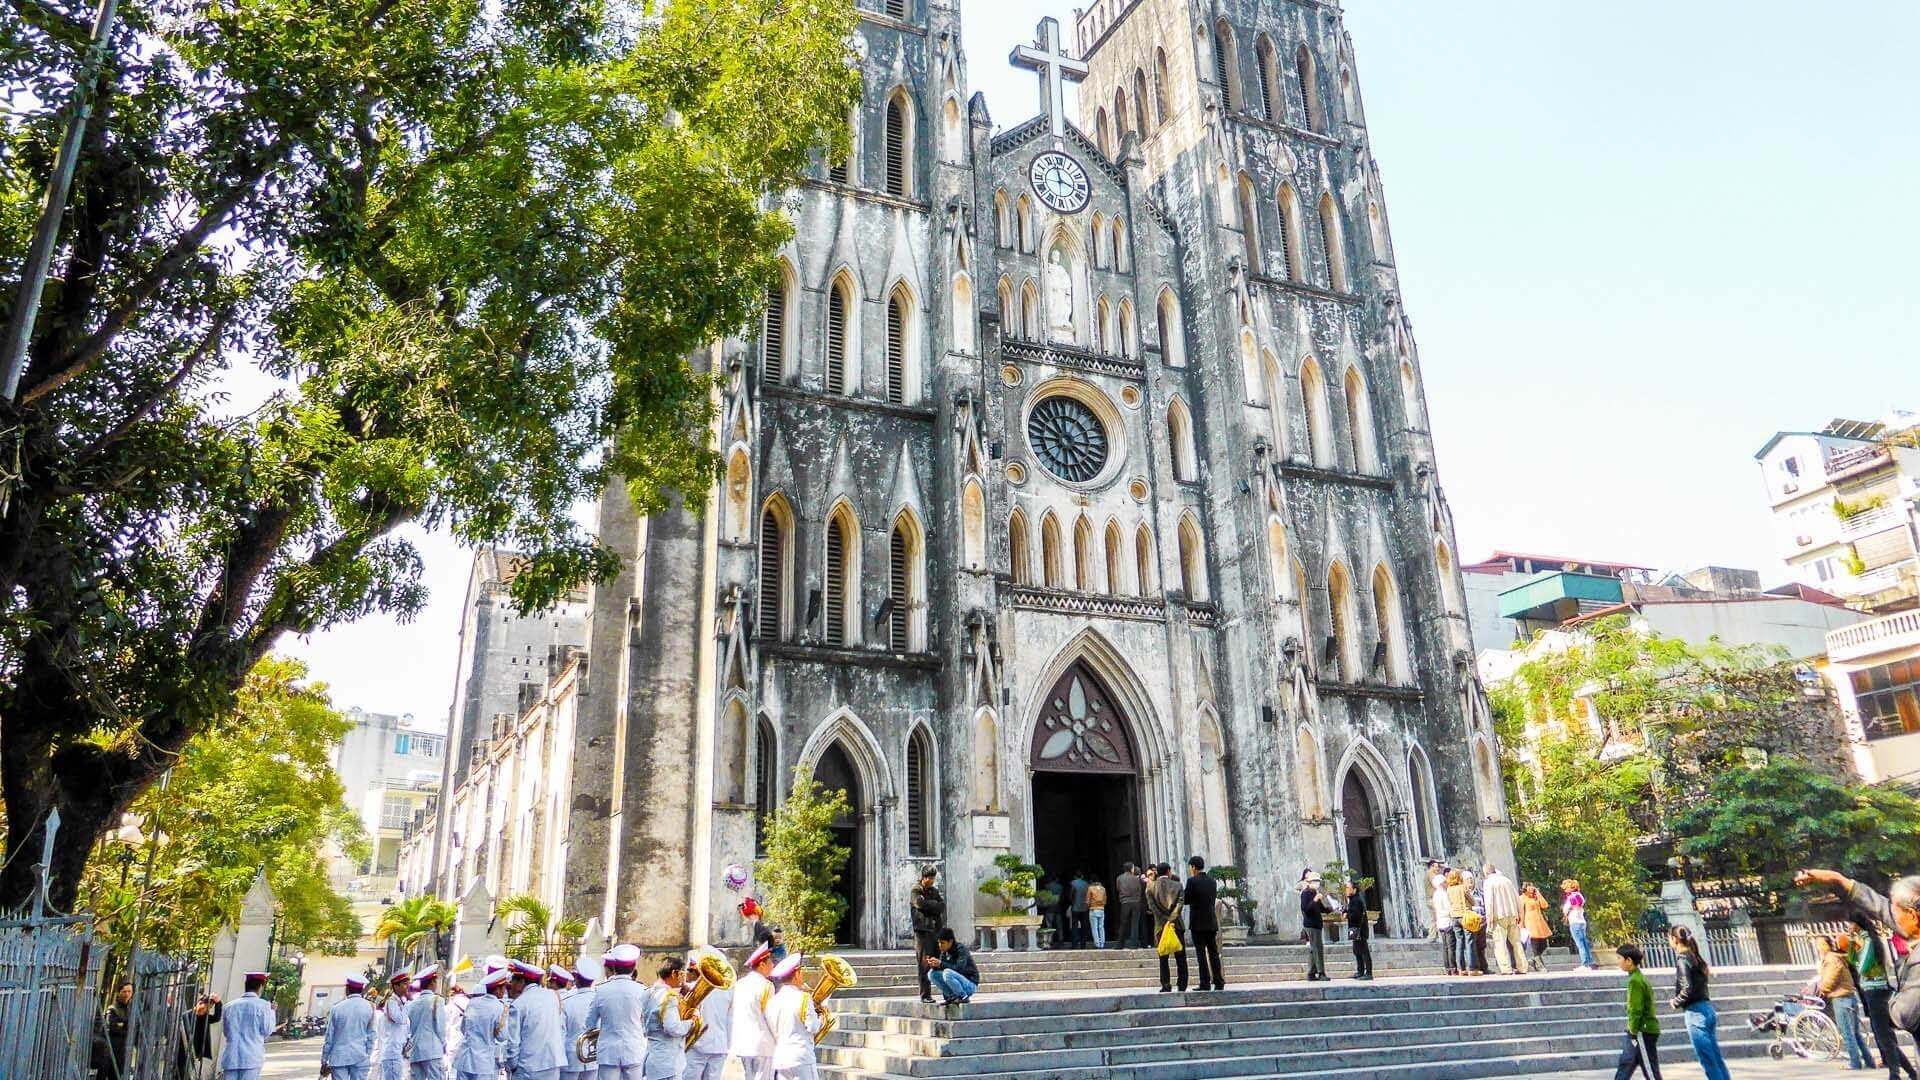 Nhà thờ lớn Hà Nội – Nét đẹp trong kiến trúc Pháp xưa